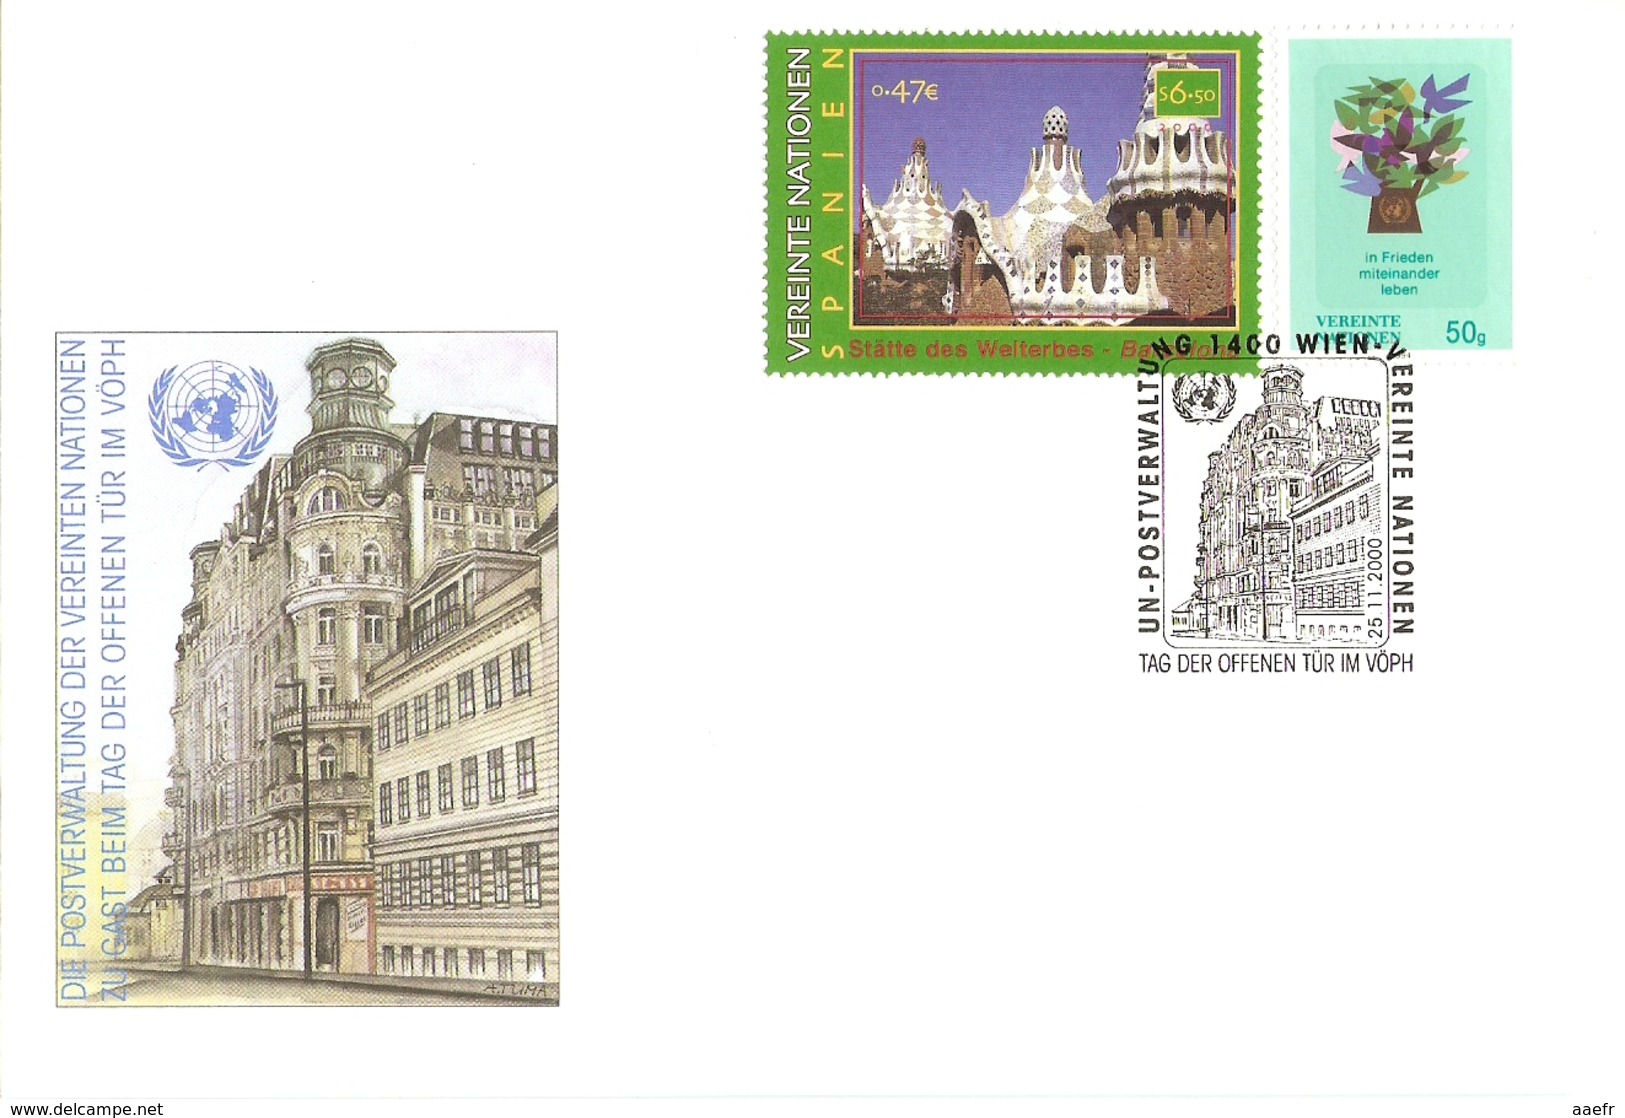 Nations-Unies Vienne 2000/1 - Petit lot de 7 enveloppes officielles avec cachets événementiels - Sonderflugpost - Senior